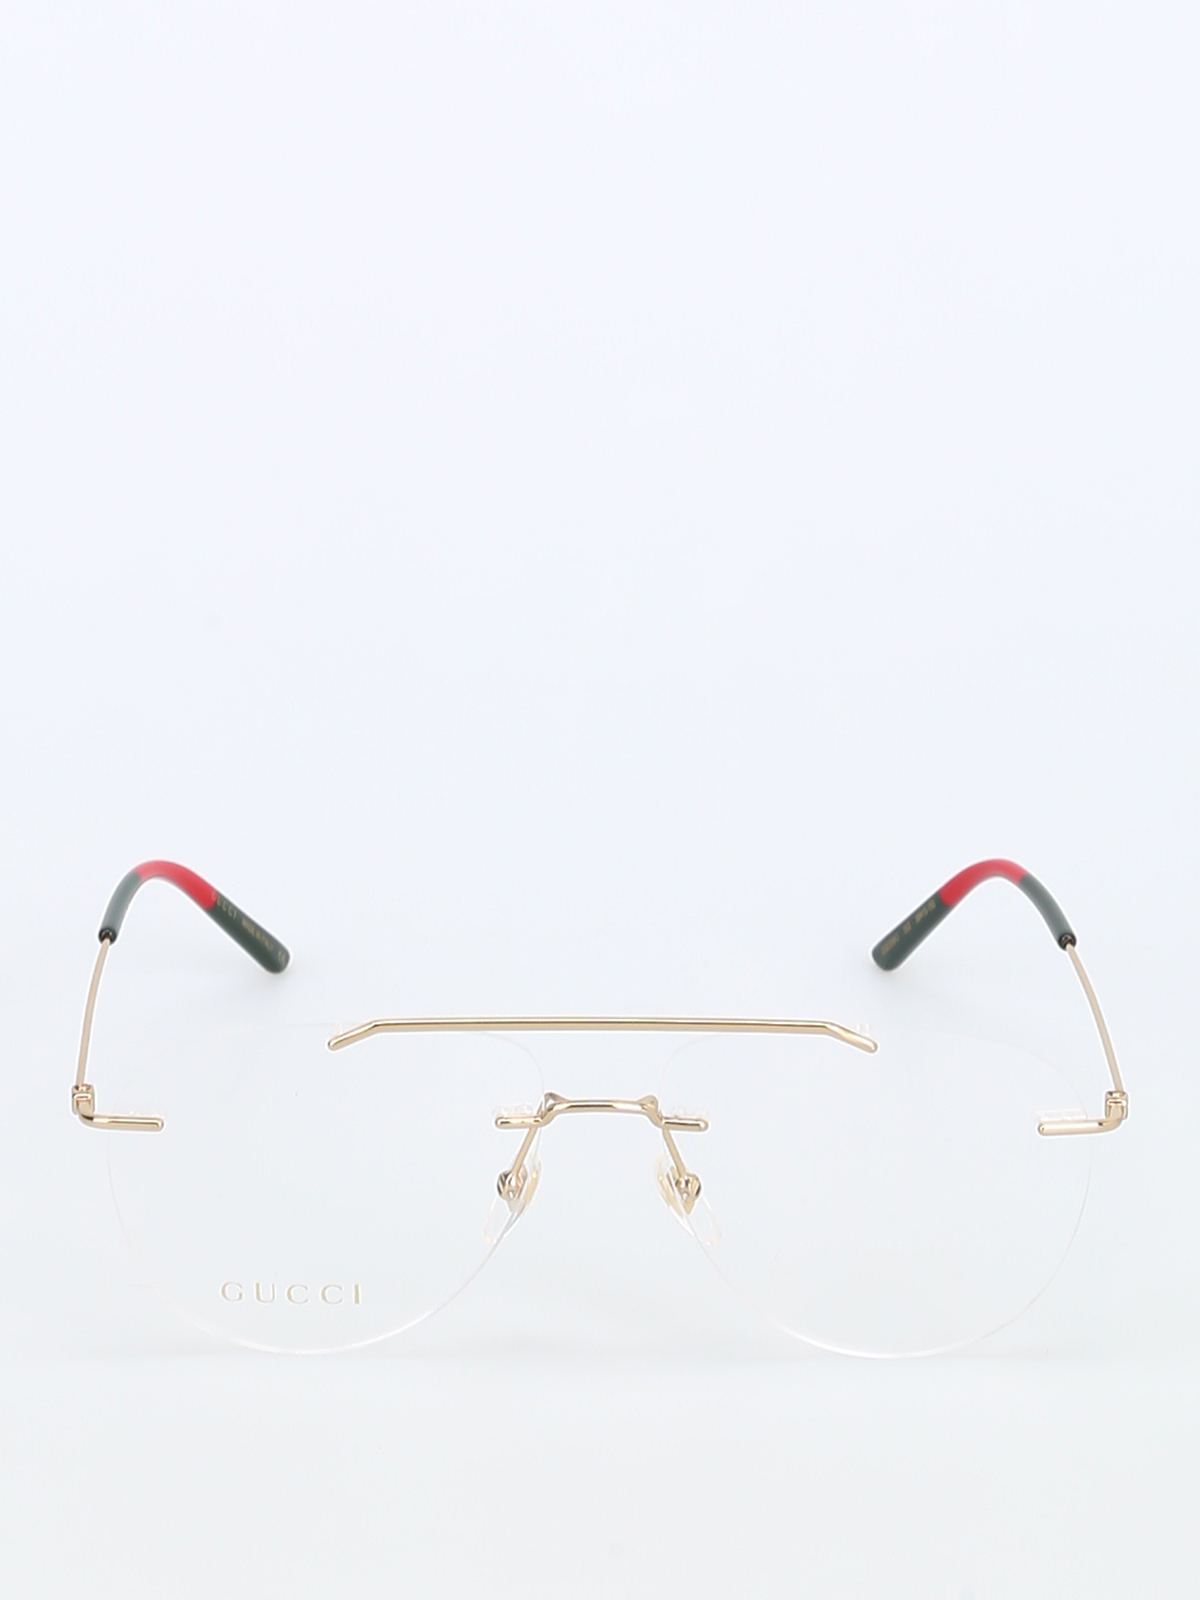 gucci gold frame eyeglasses